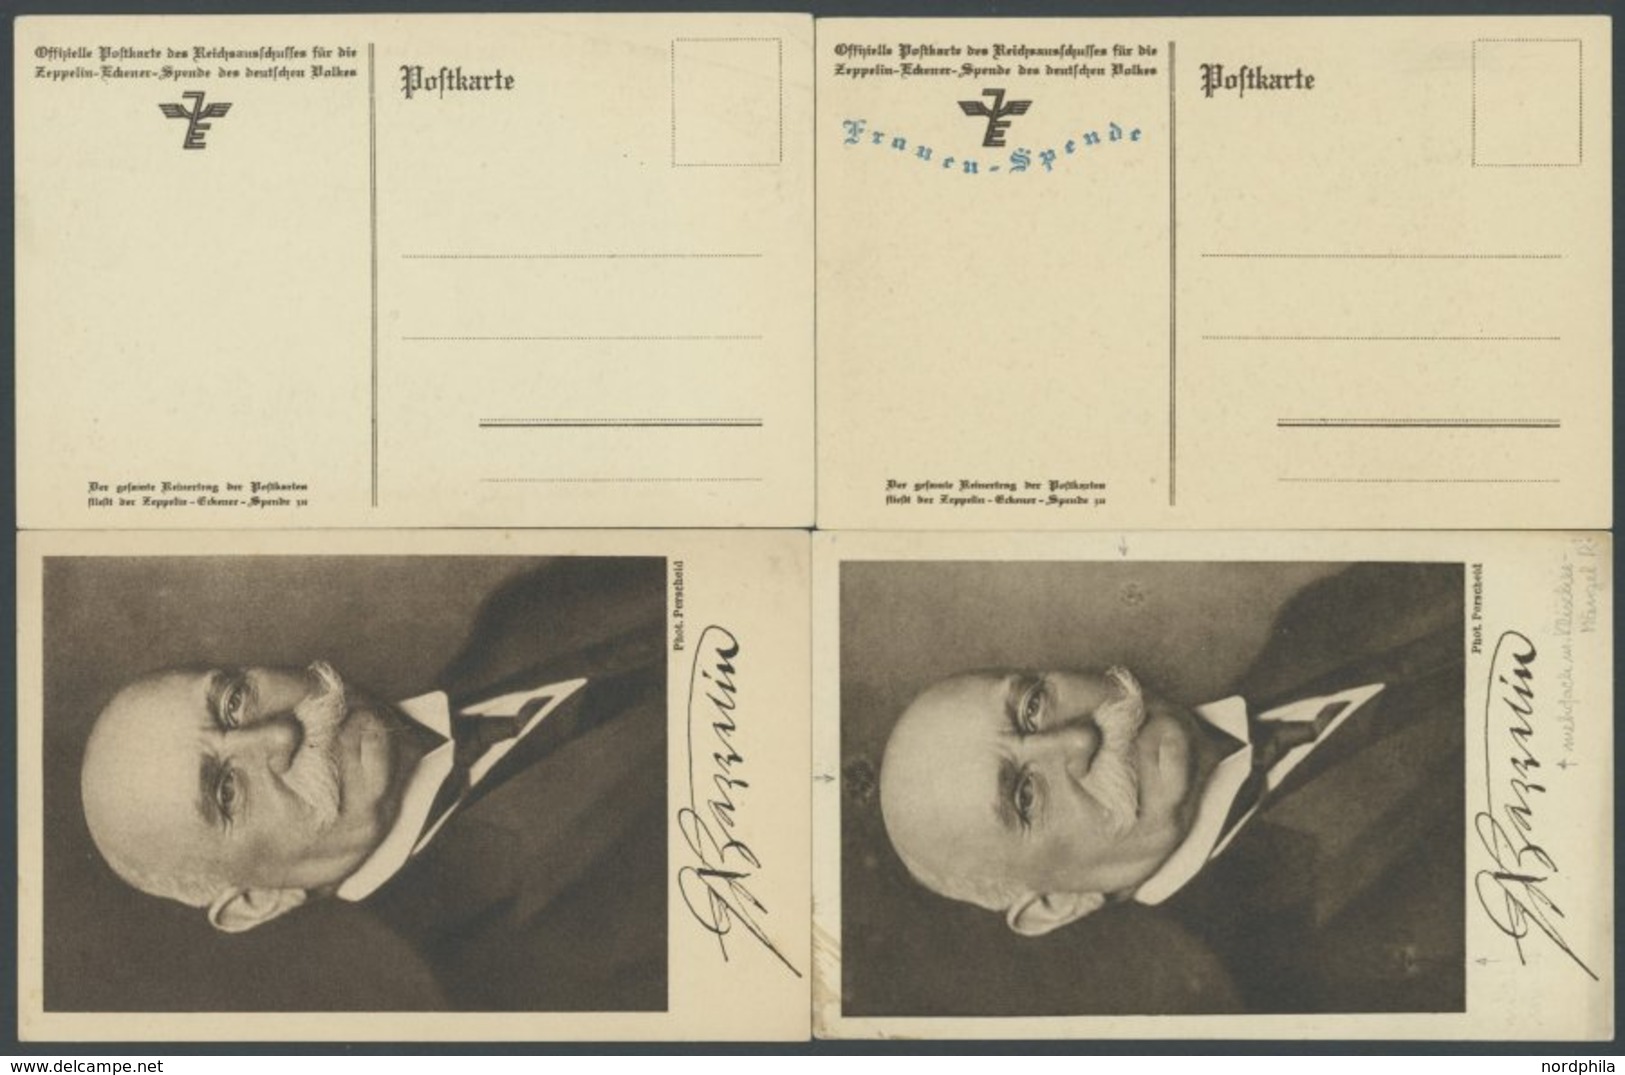 LUFTPOST-VIGNETTEN 1925, Zeppelin-Eckener-Spende Mit Blauem Zudruck Frauen-Spende, 4 Ungebrauchte Verschiedene Portraitk - Posta Aerea & Zeppelin